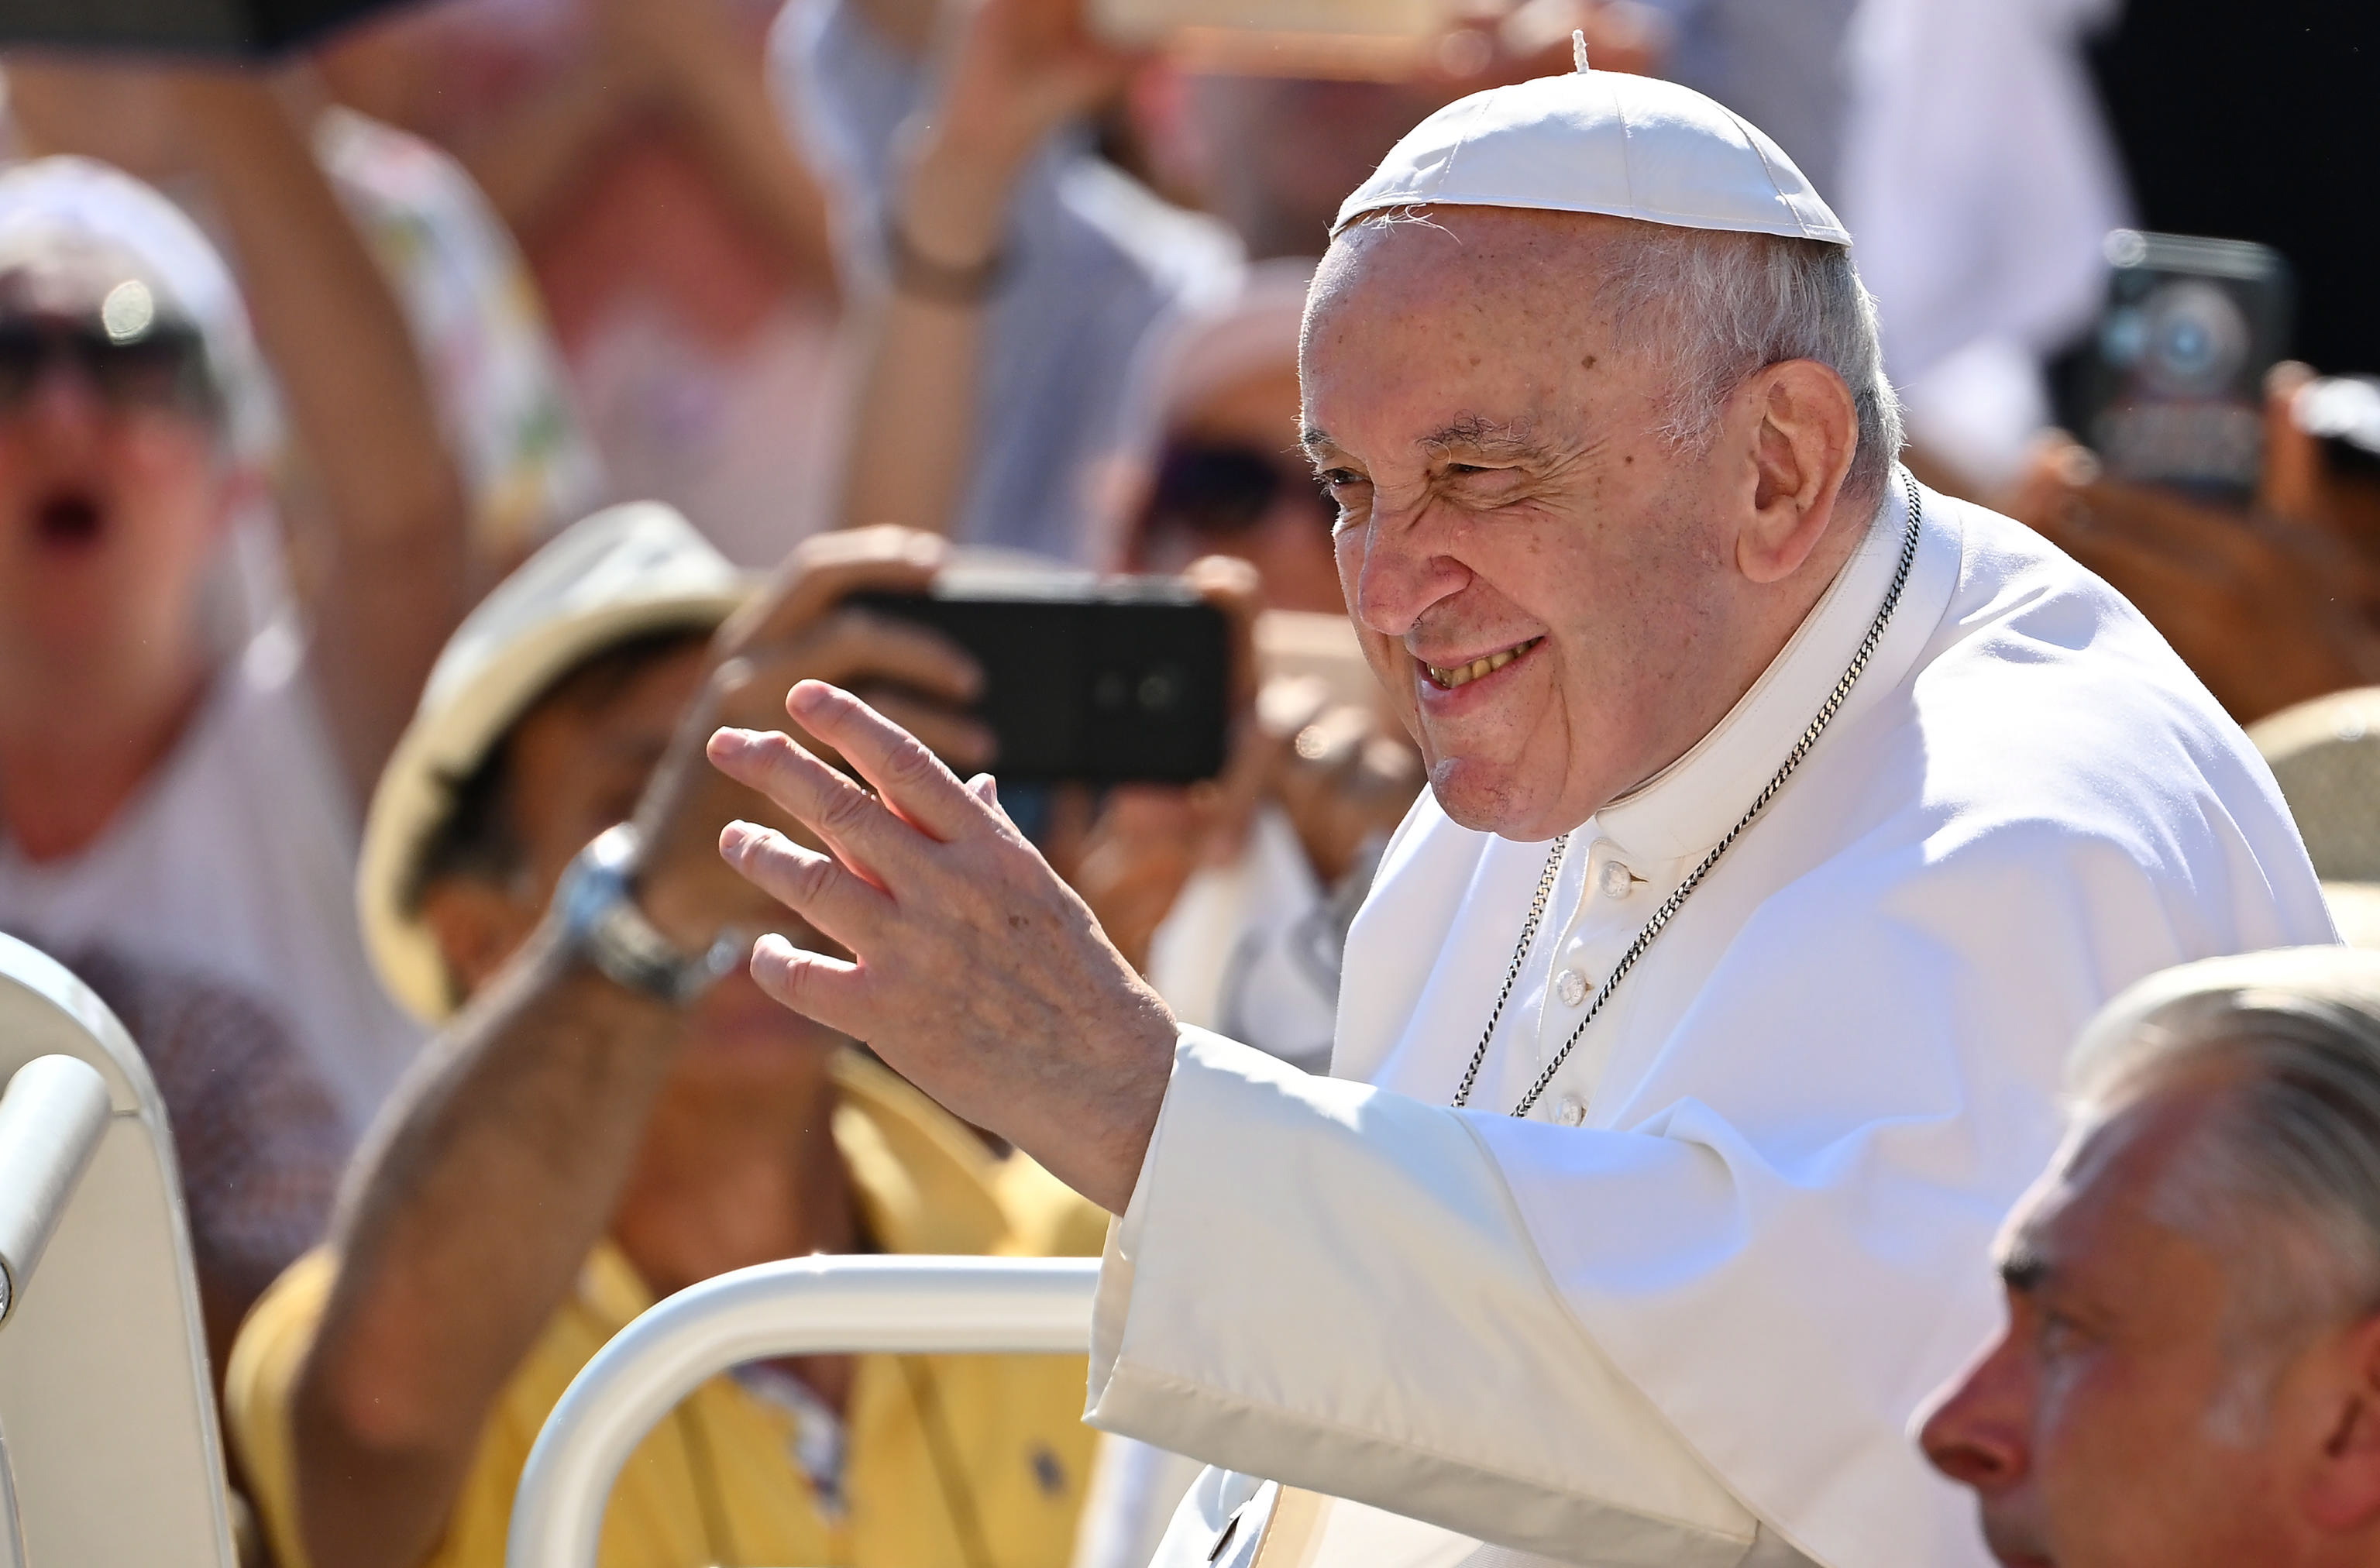 El papa Francisco confesó ante algunos obispos brasileños que no piensa renunciar al cargo